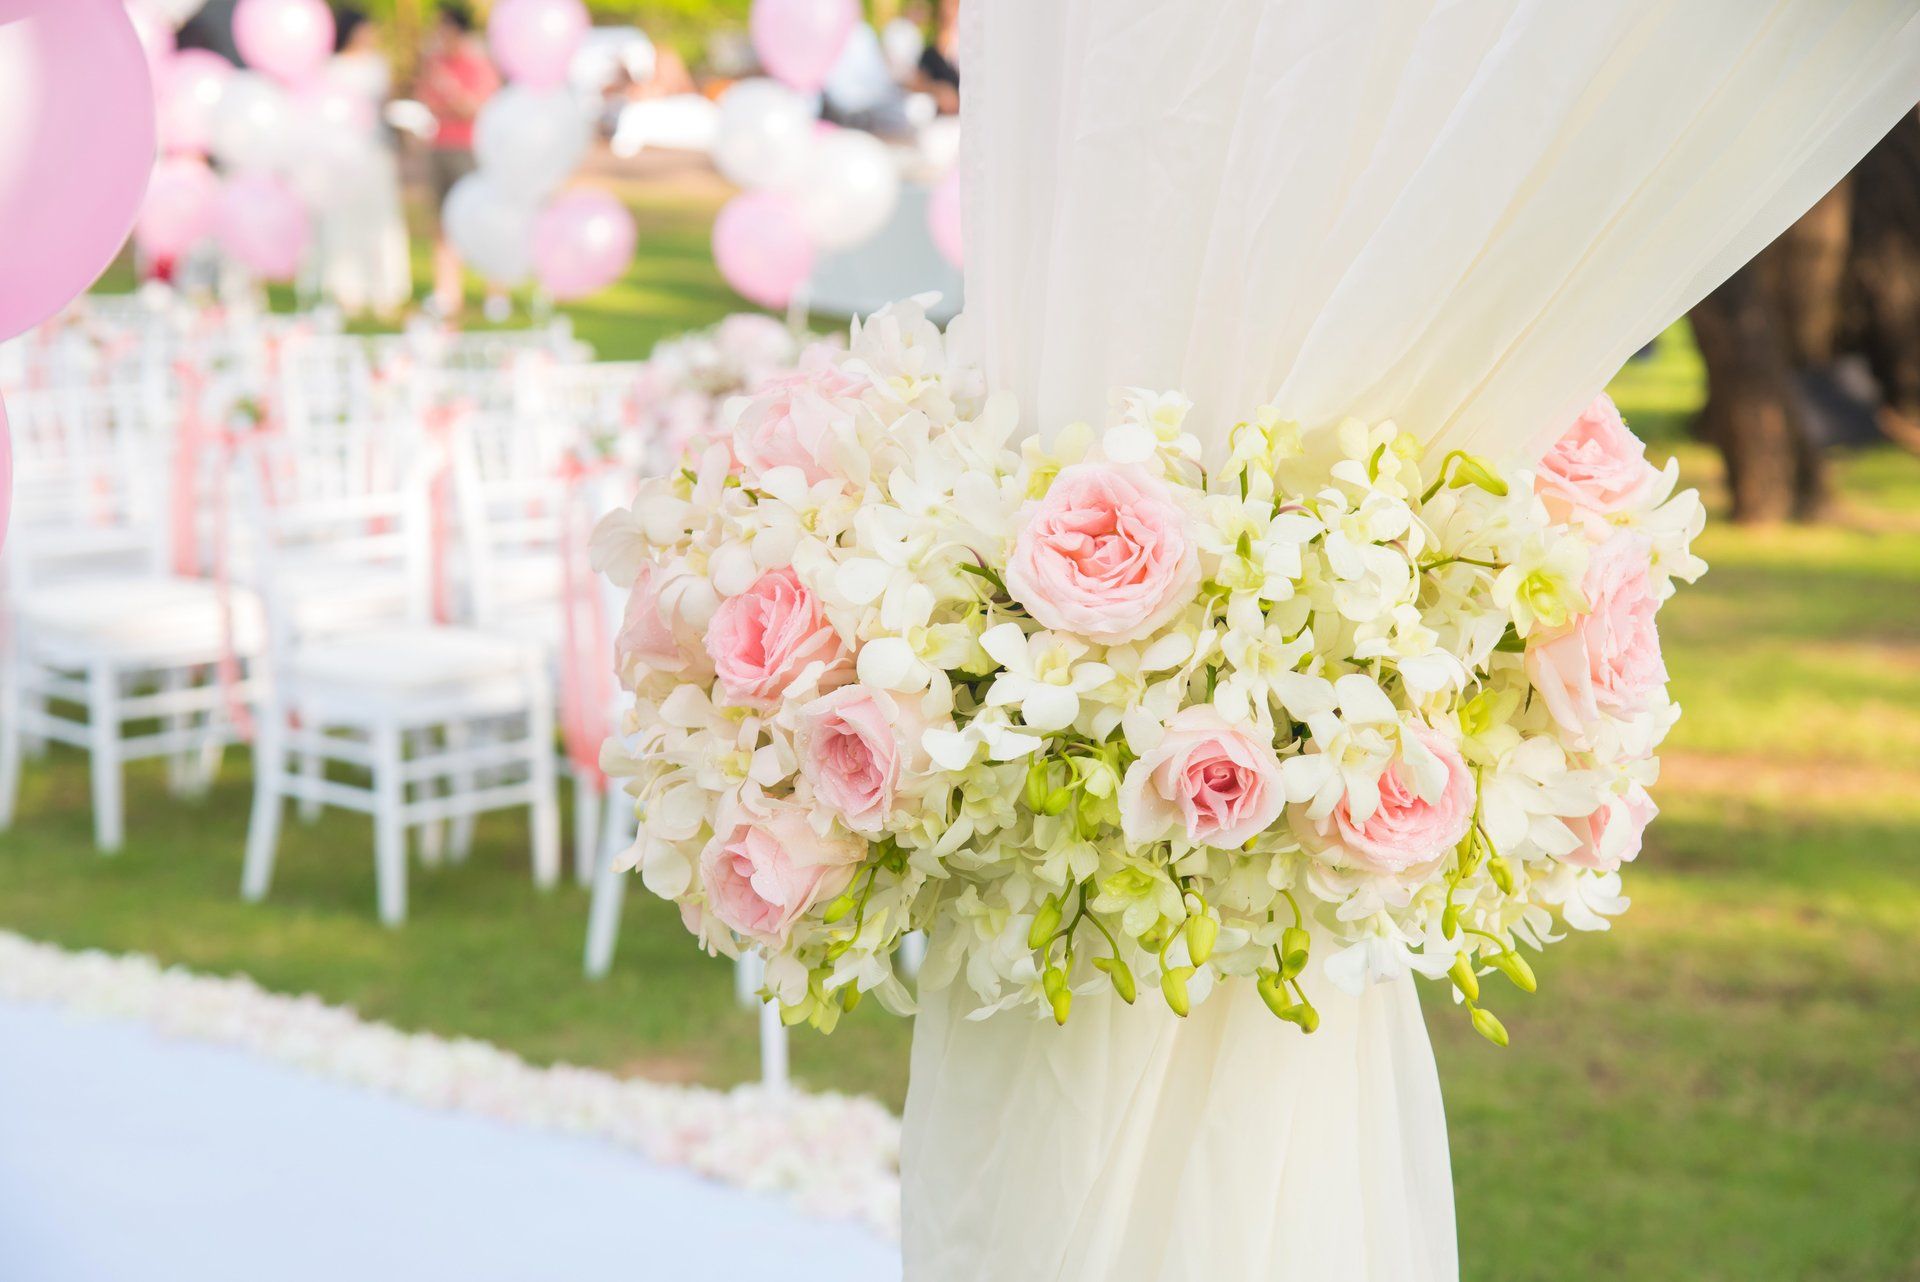 Mariage décoration florale cérémonie laïque